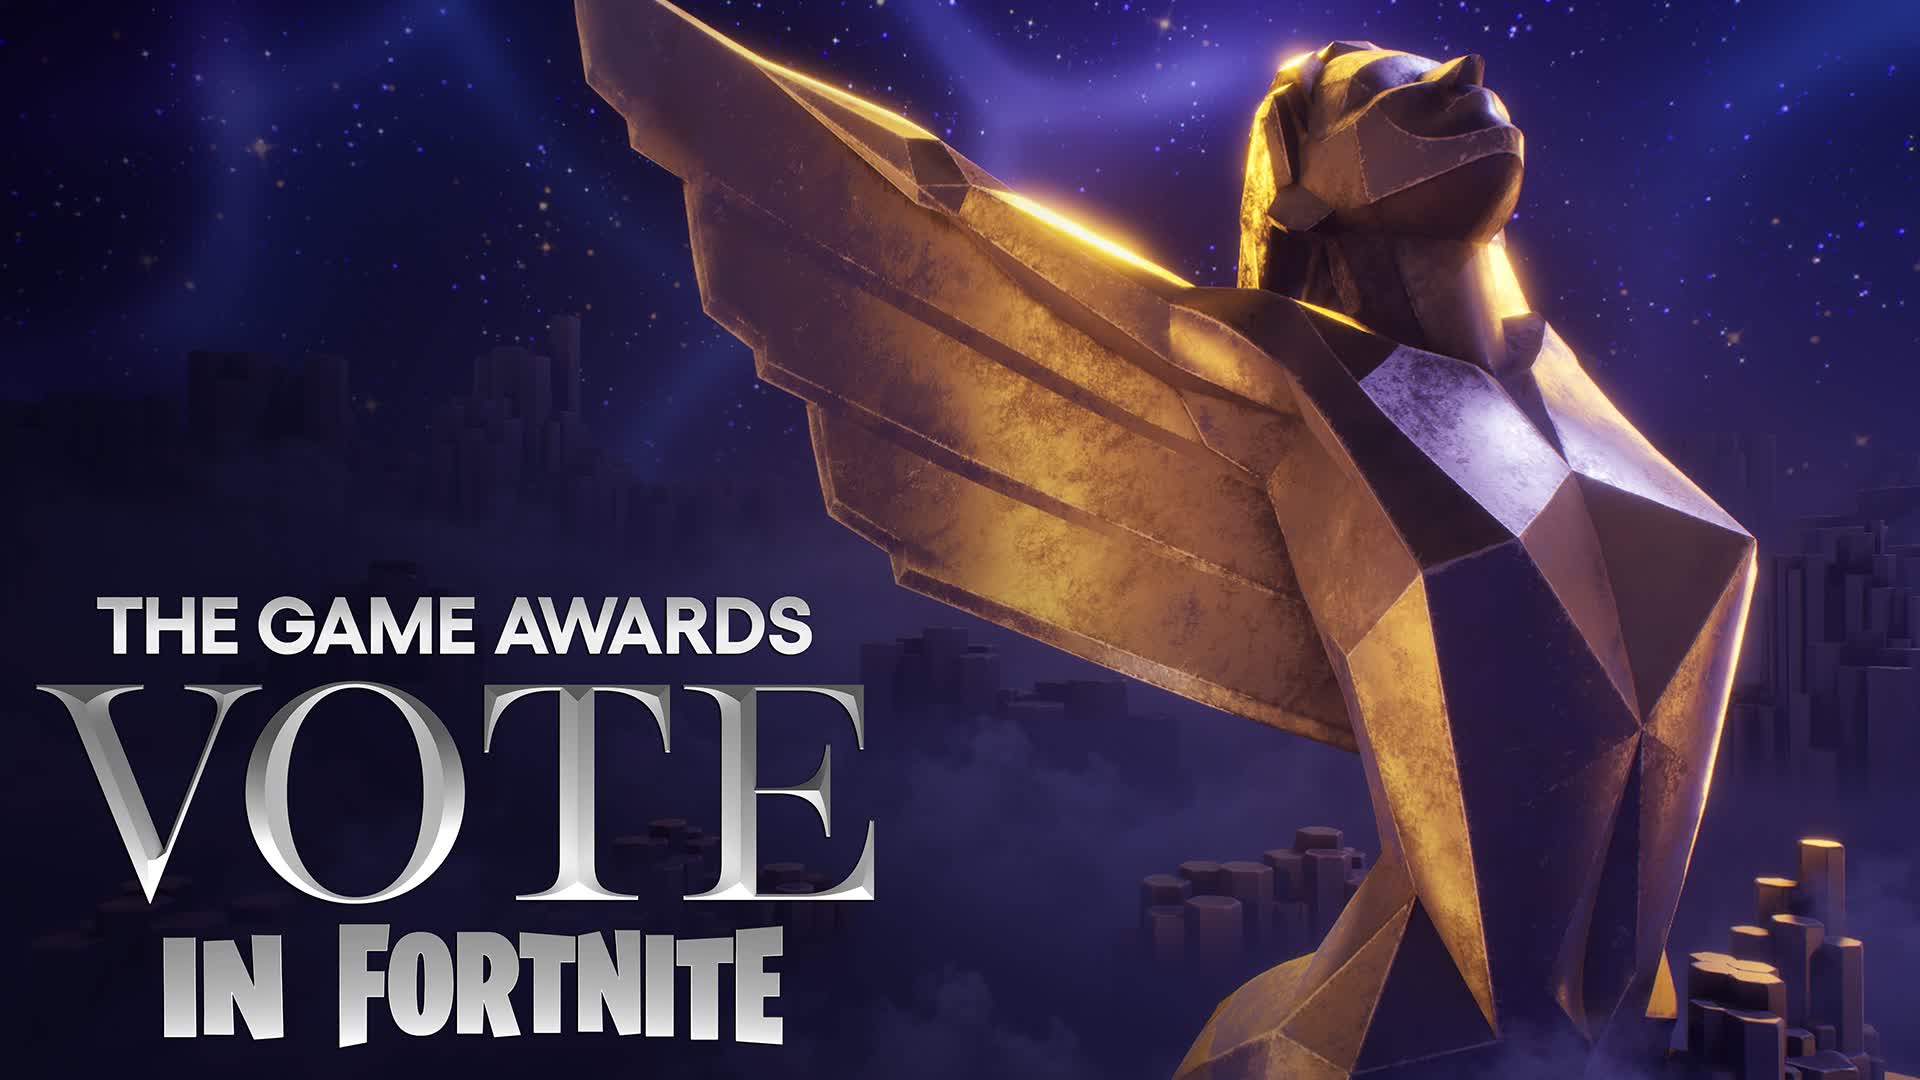 【注目の島】The Game Awards Vote in Fortnite